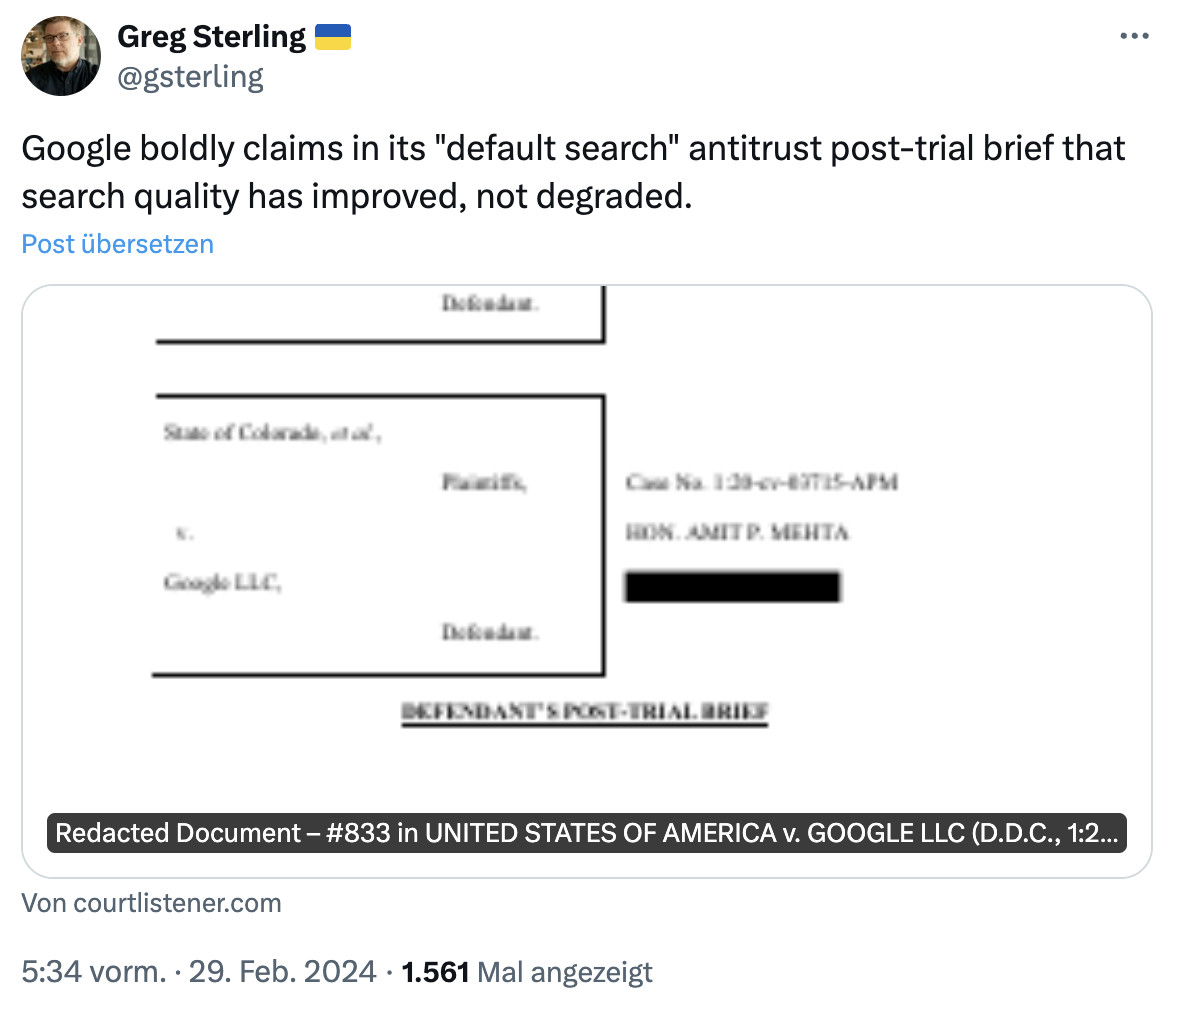 Google: 'Qualität der Suche hat sich kontinuierlich verbessert' - Greg Sterling auf Twitter